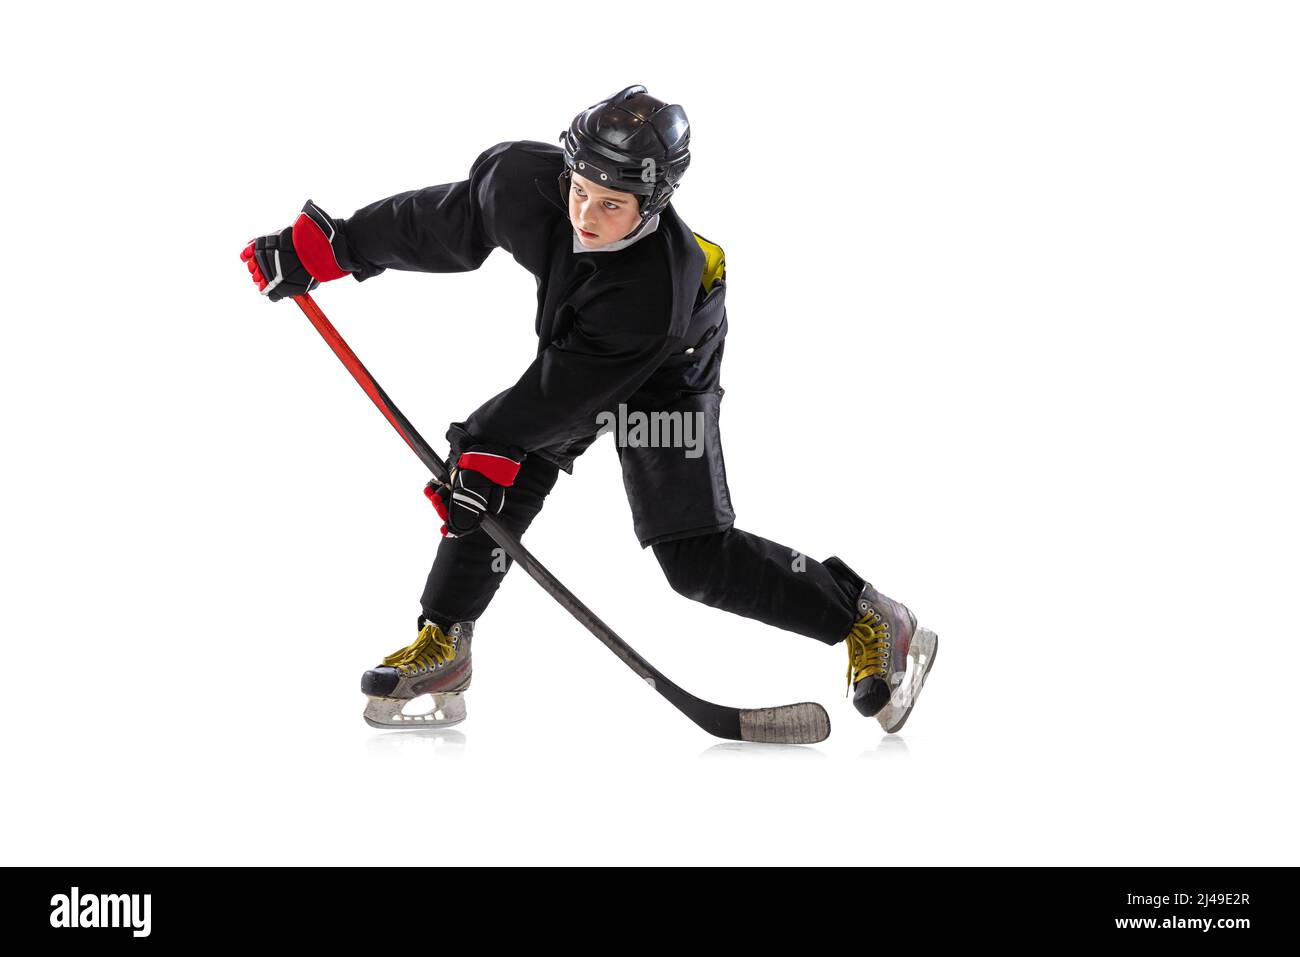 Sur la course. Enfant, joueur de hockey avec bâton sur cour de glace et fond blanc. Banque D'Images